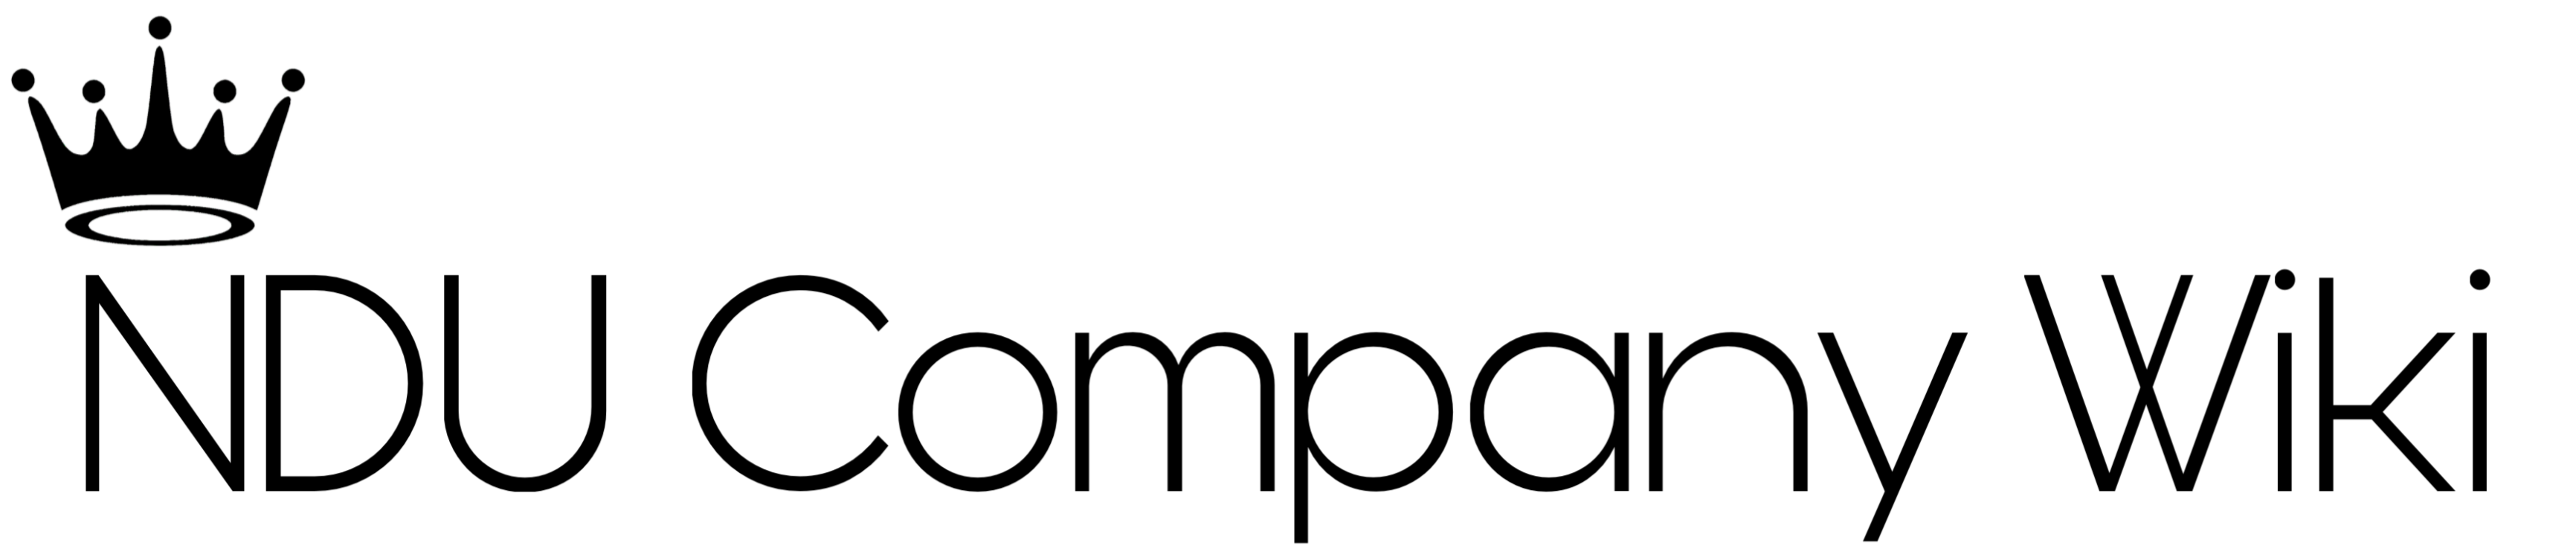 NDU Company Wiki Logotype